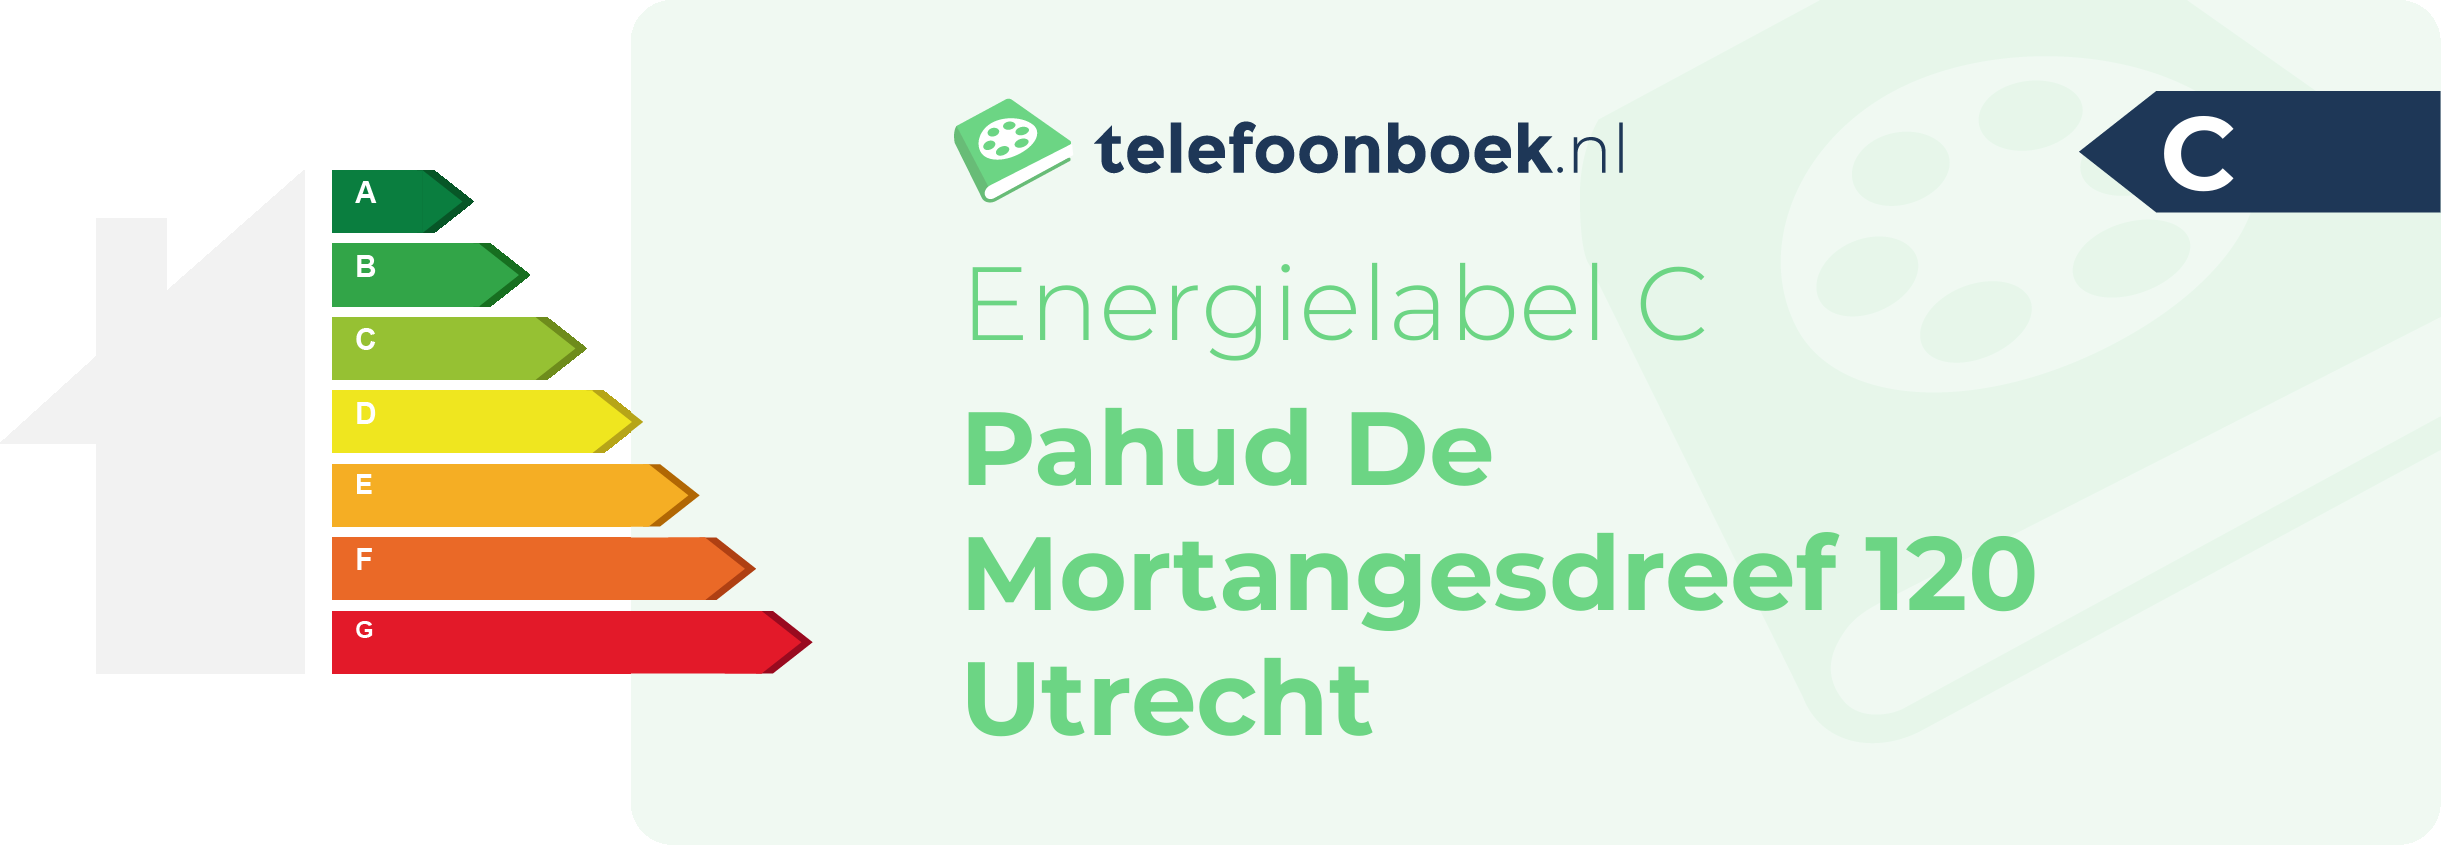 Energielabel Pahud De Mortangesdreef 120 Utrecht